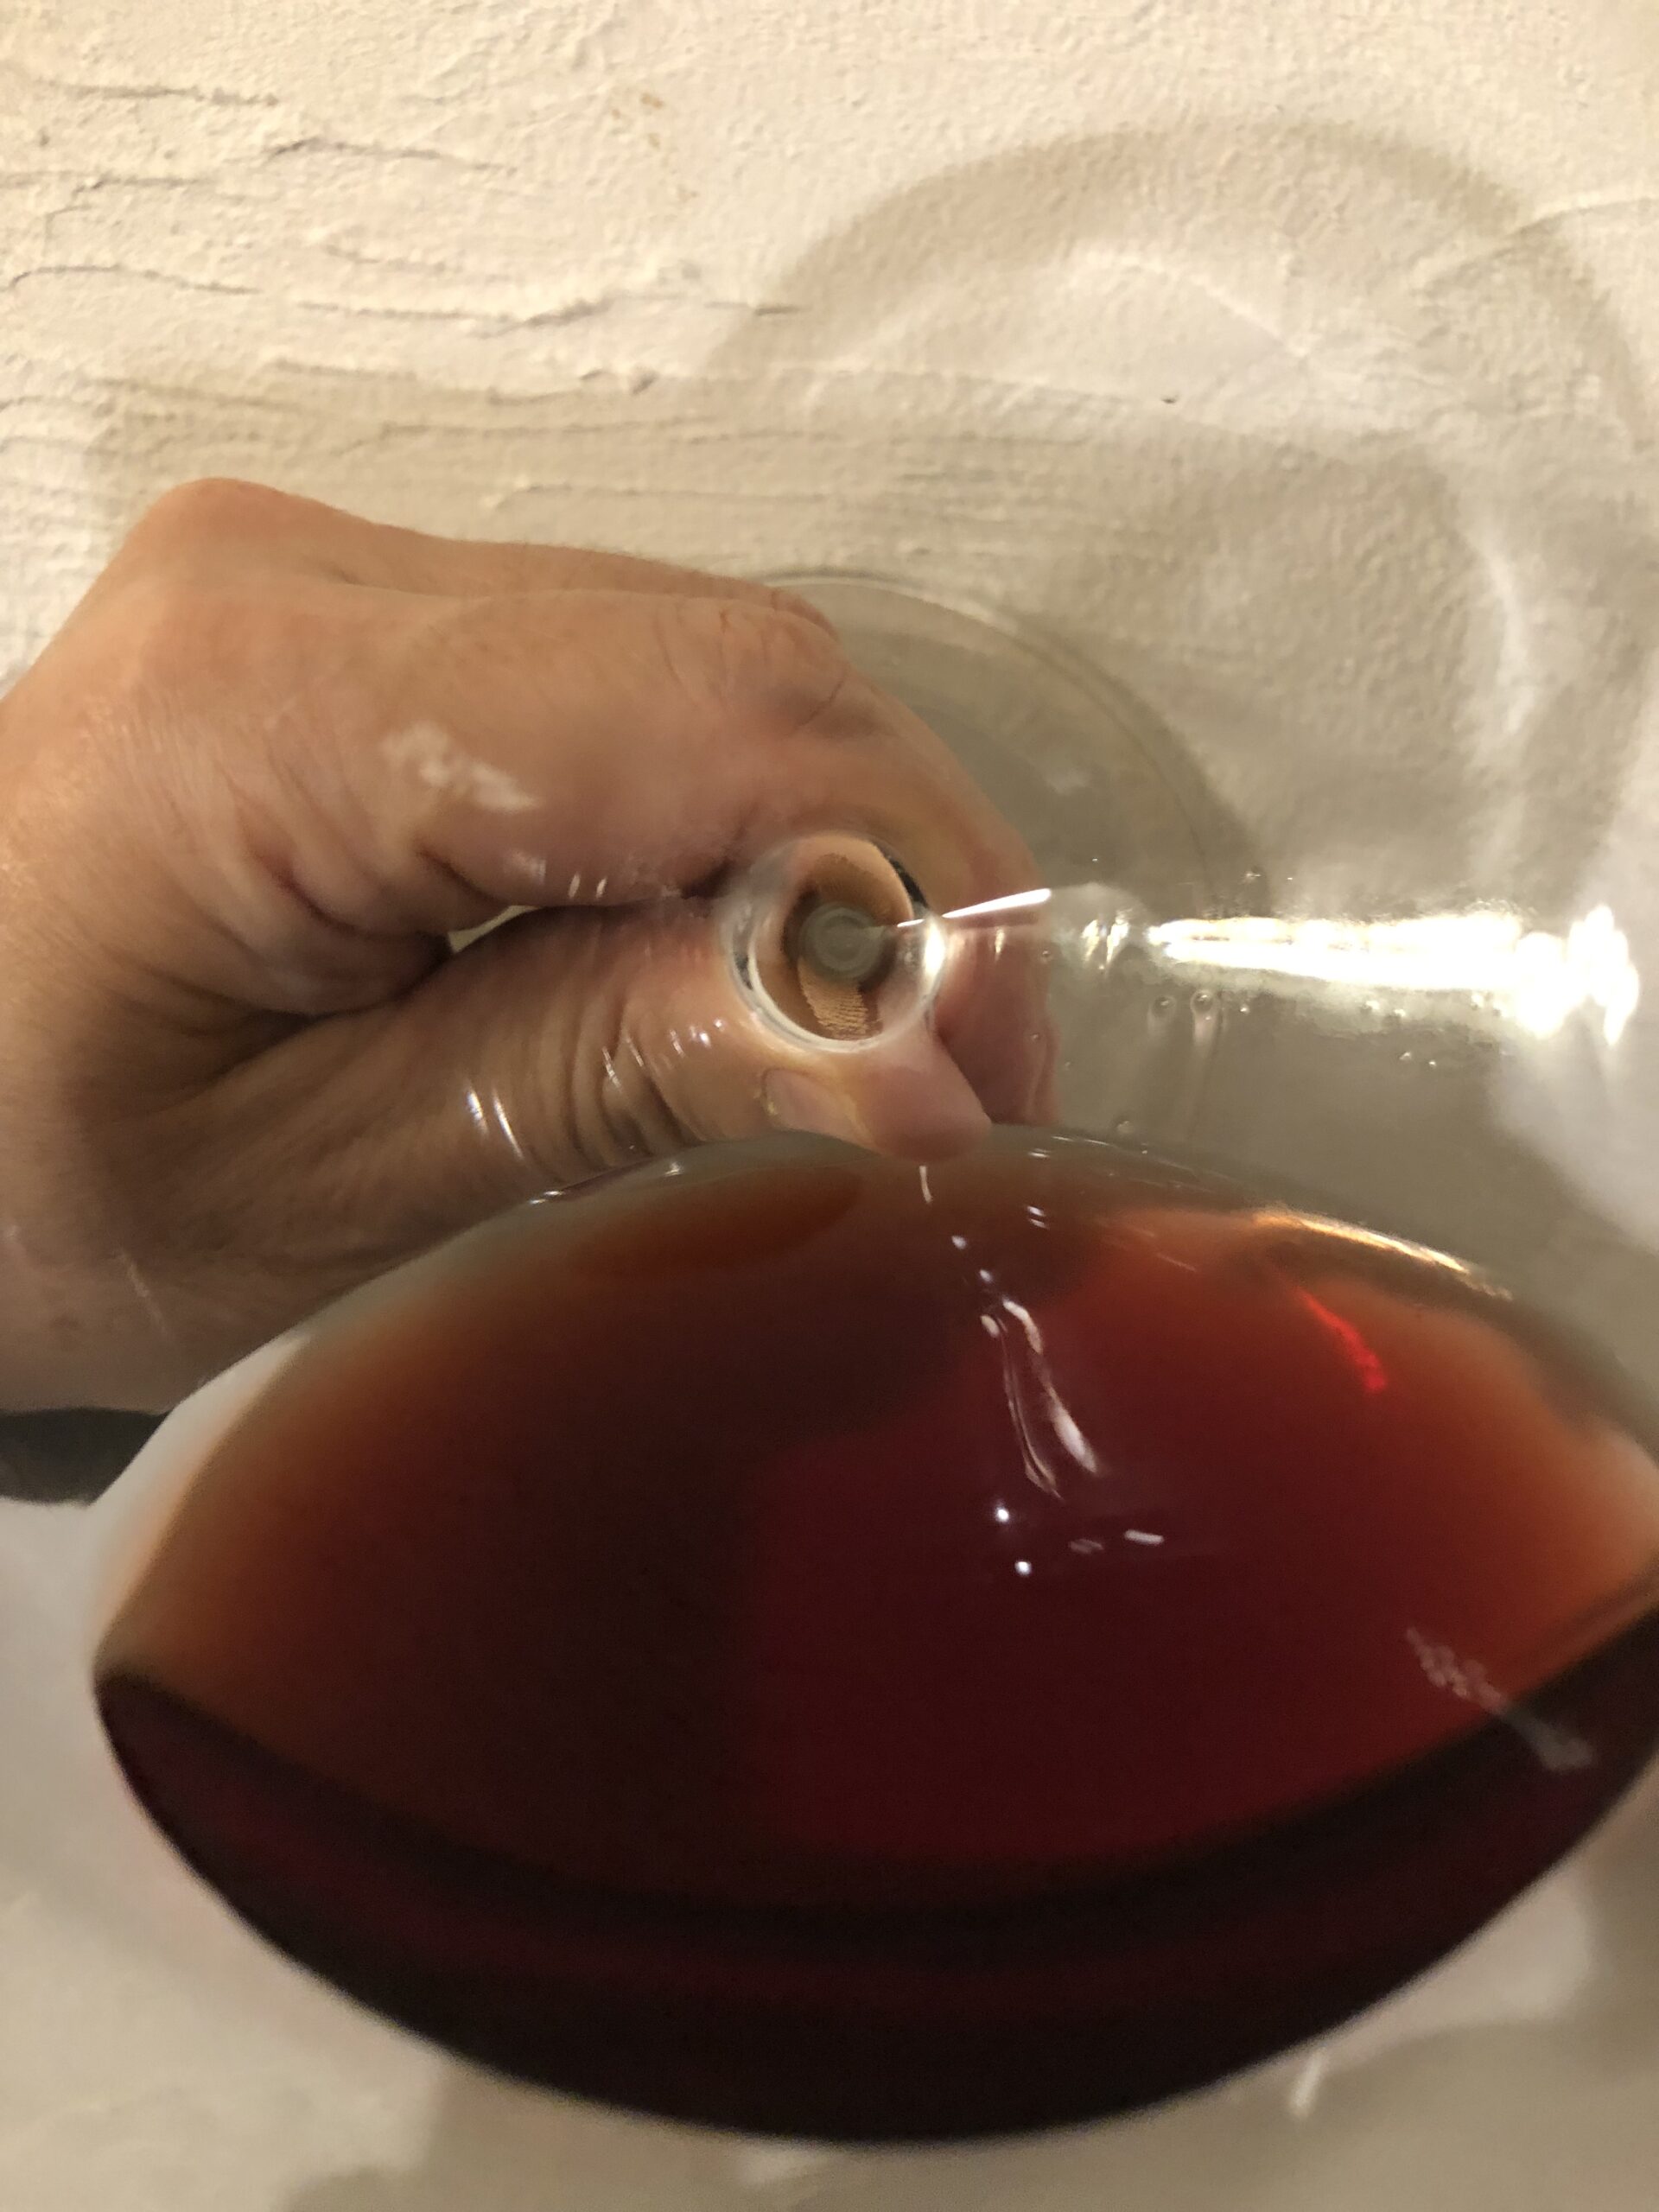 卓抜 輝きのあるルビーレッド 品種特有のぶどう果実の香りとしっかりとしたボディのあるワイン ボリュームのある味わいで タンニンは柔らかく 飲み心地の良いワインです Rione dei Dogi Rosso Molise Riserva DOC 750ml リオーネ デイ ドージ ロッソ モリーゼ リゼルヴァ モリーゼ州 13度 赤ワイン モンテプルチアーノ 100% 天然コルク learnrealjapanese.com